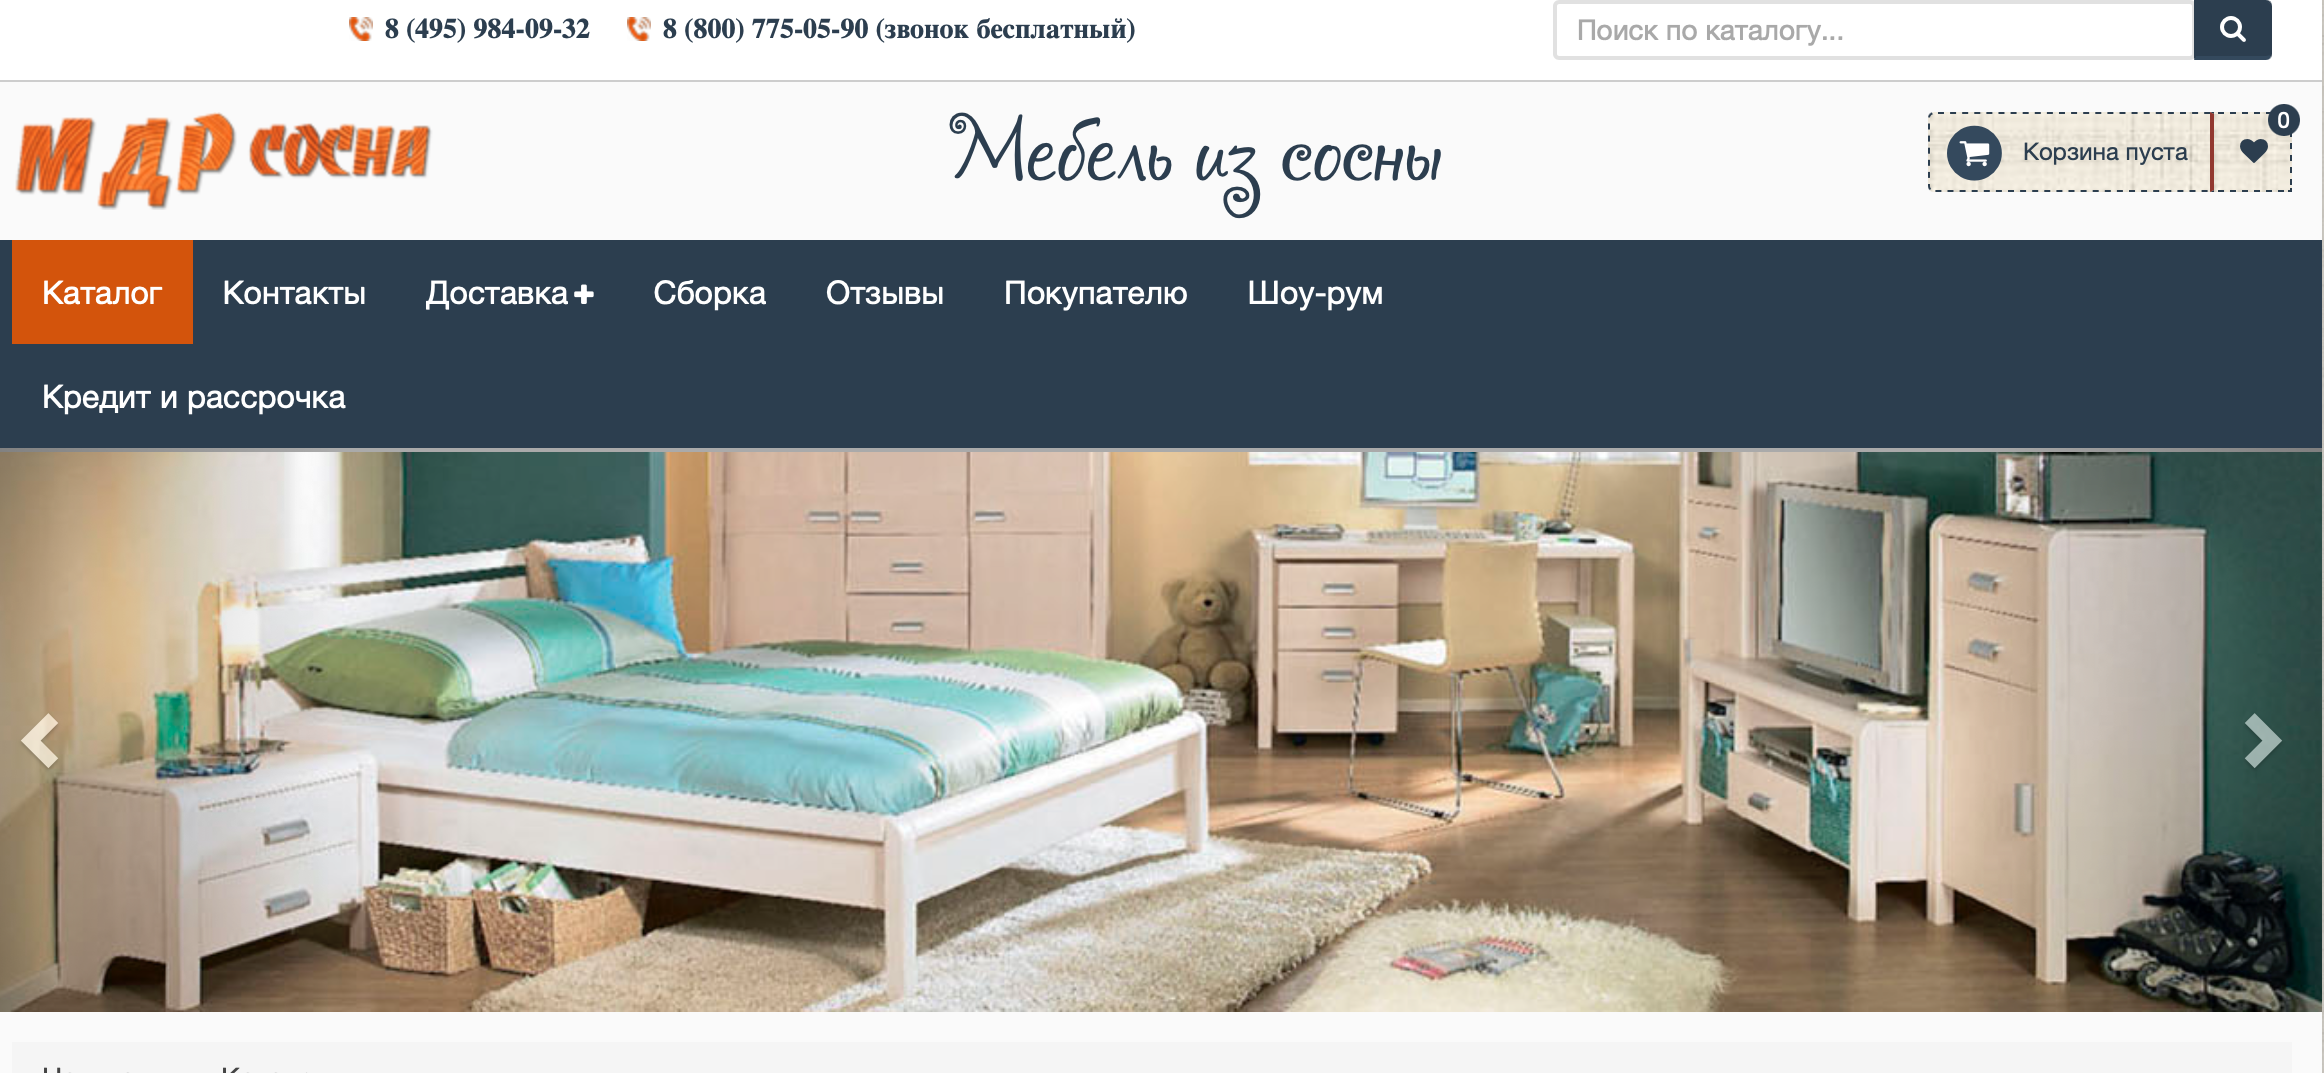 Мебель из сосны: преимущества на mdr-sosna.ru